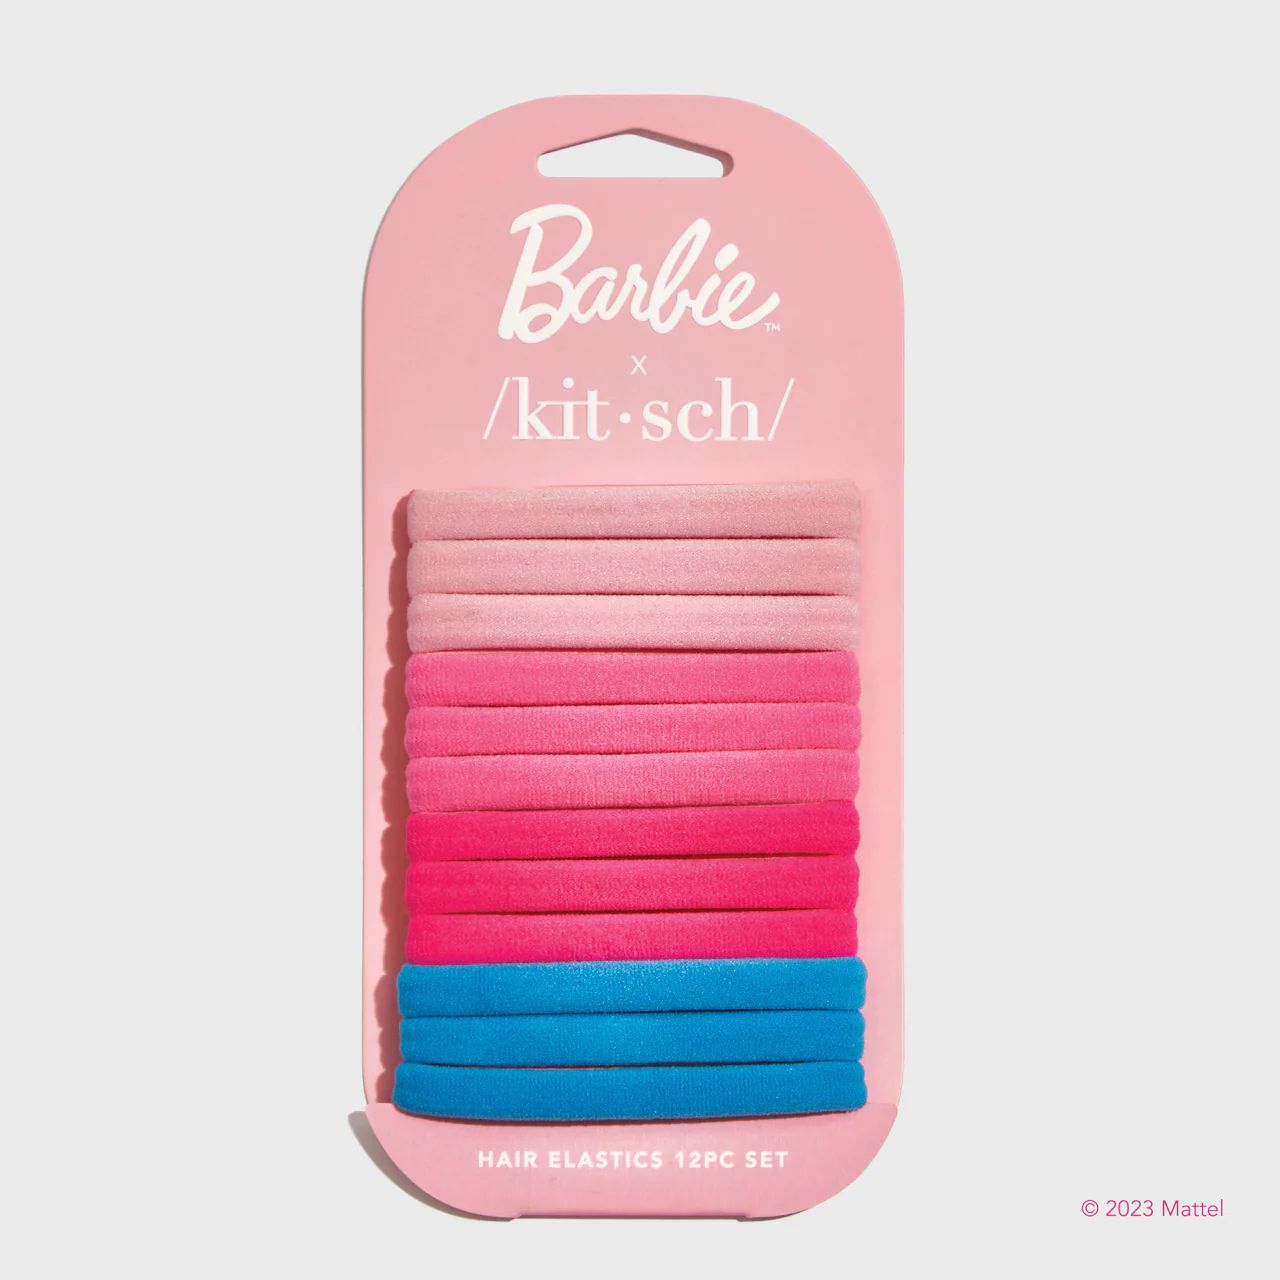 Barbie x Kitsch Recycled Nylon Elastics 12pc | Kitsch